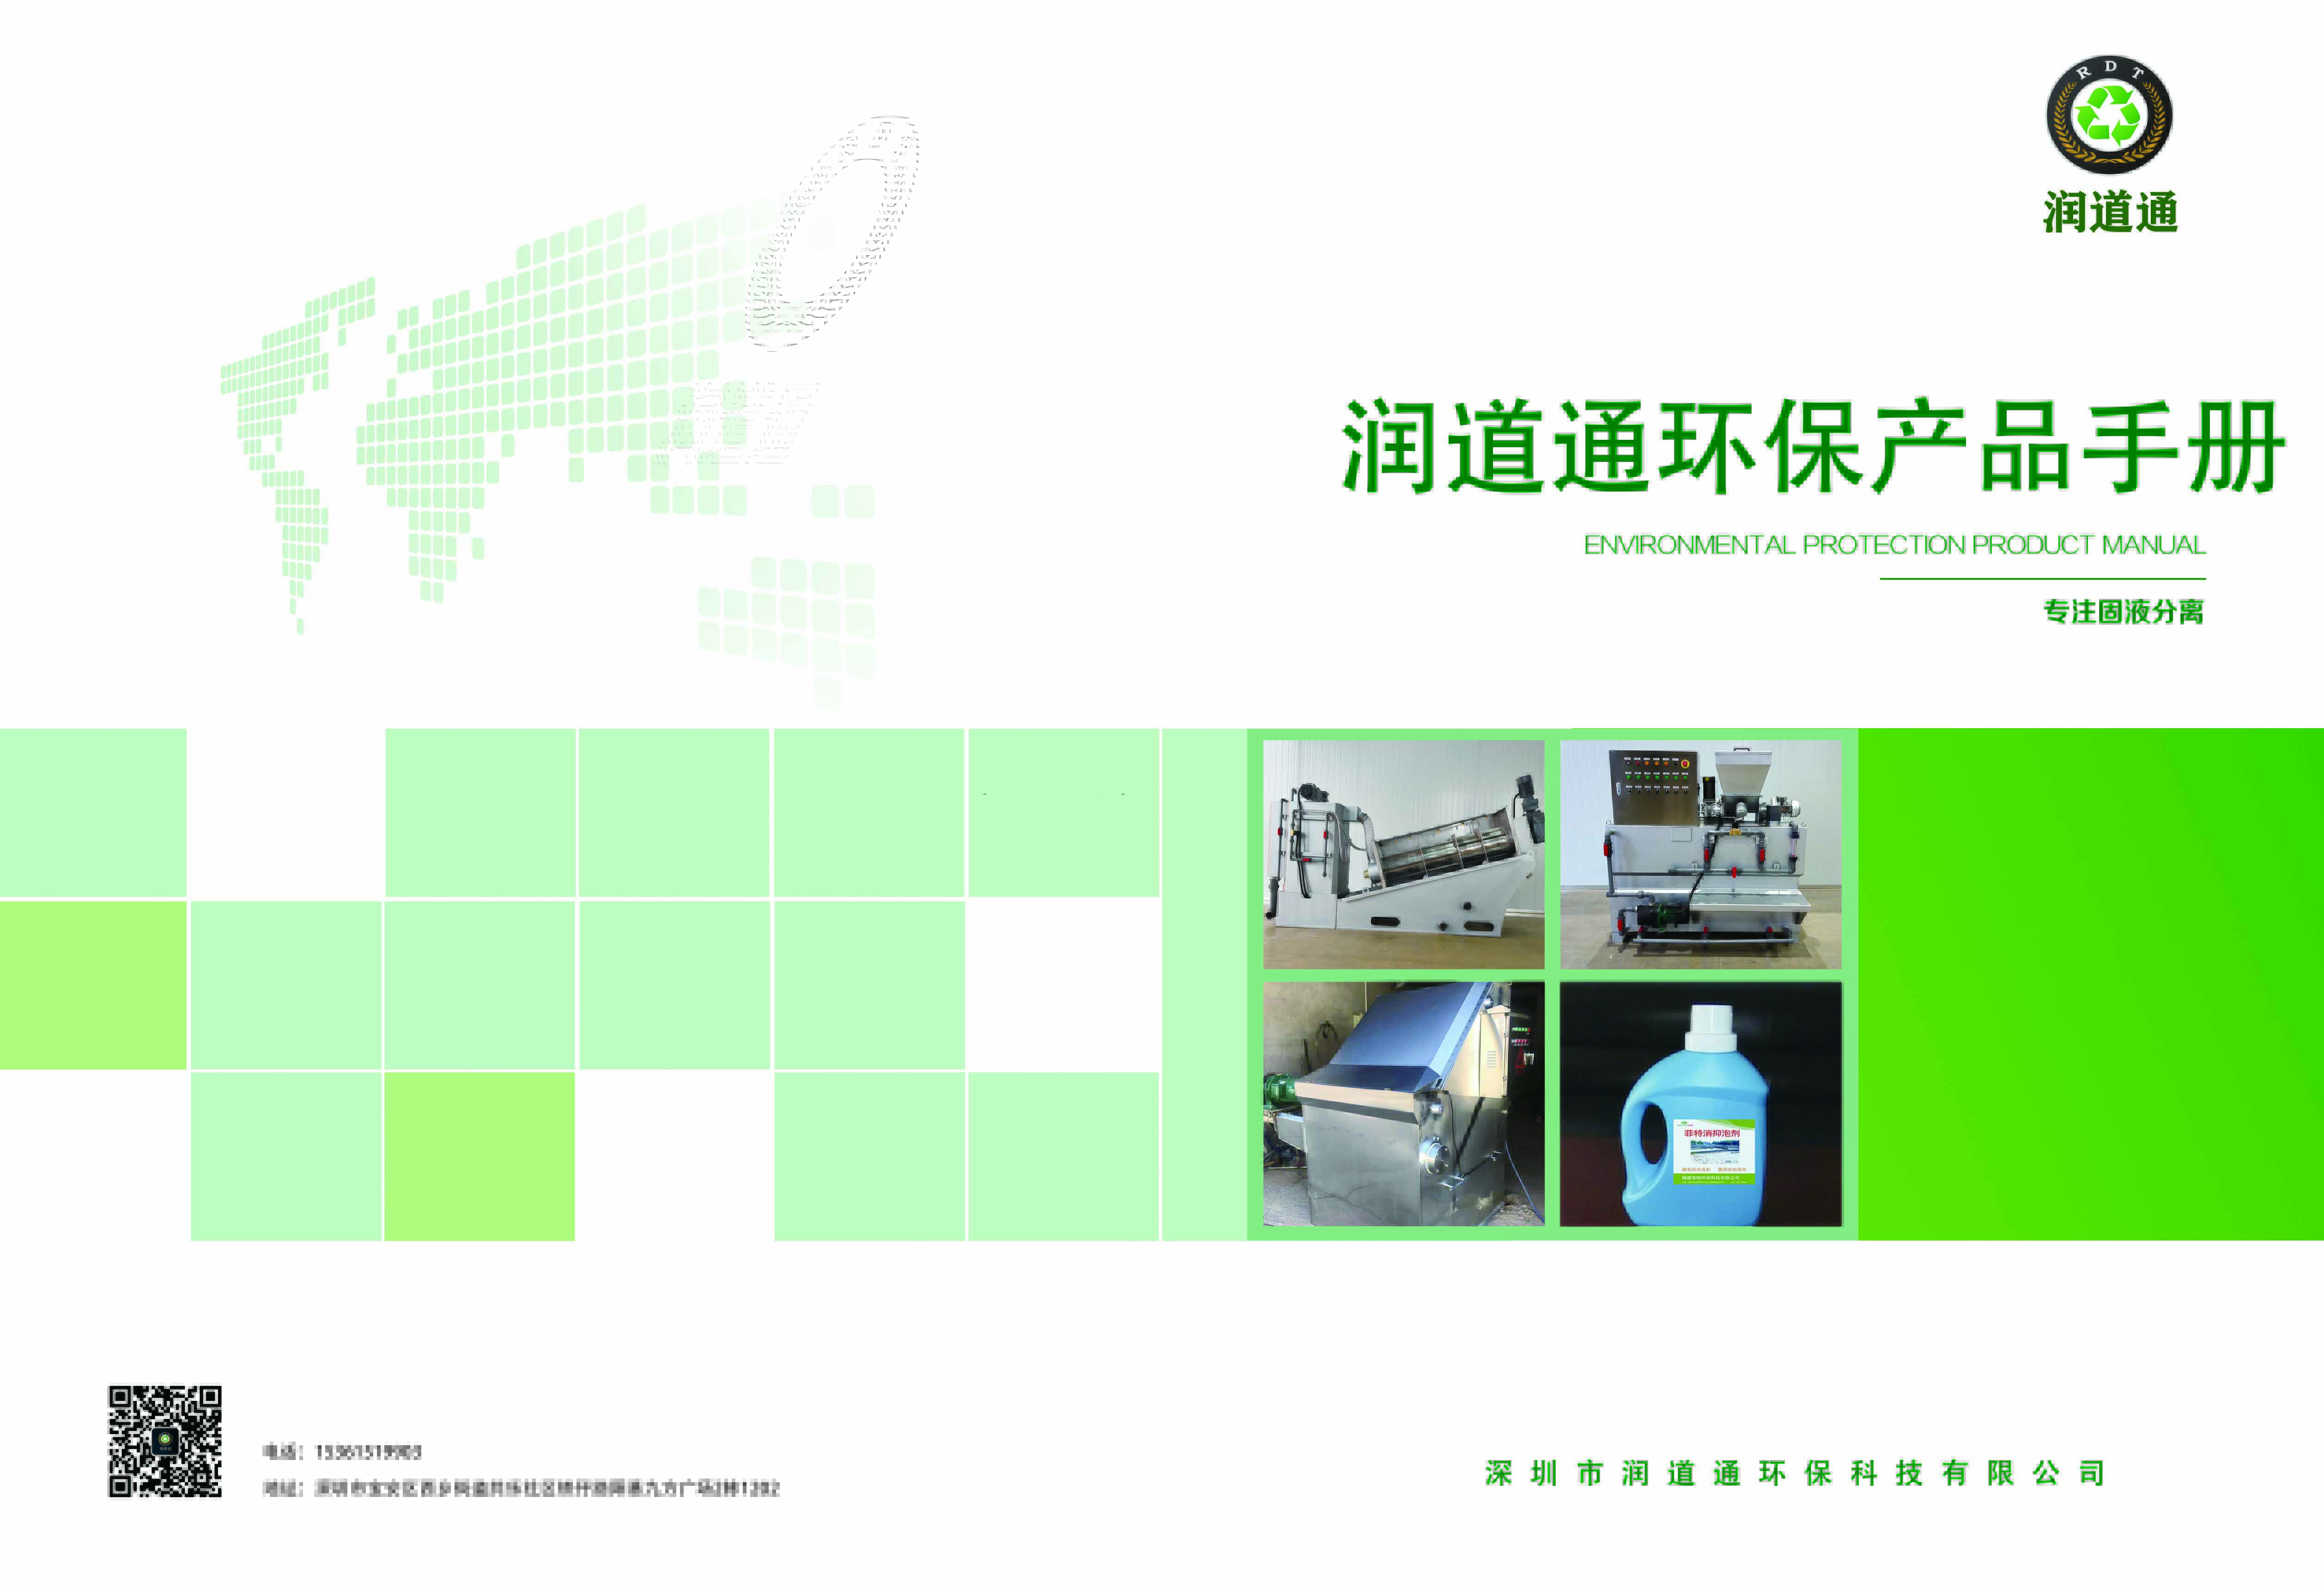 潤道通環保產品手冊-自主研發生產（專注固液分離）